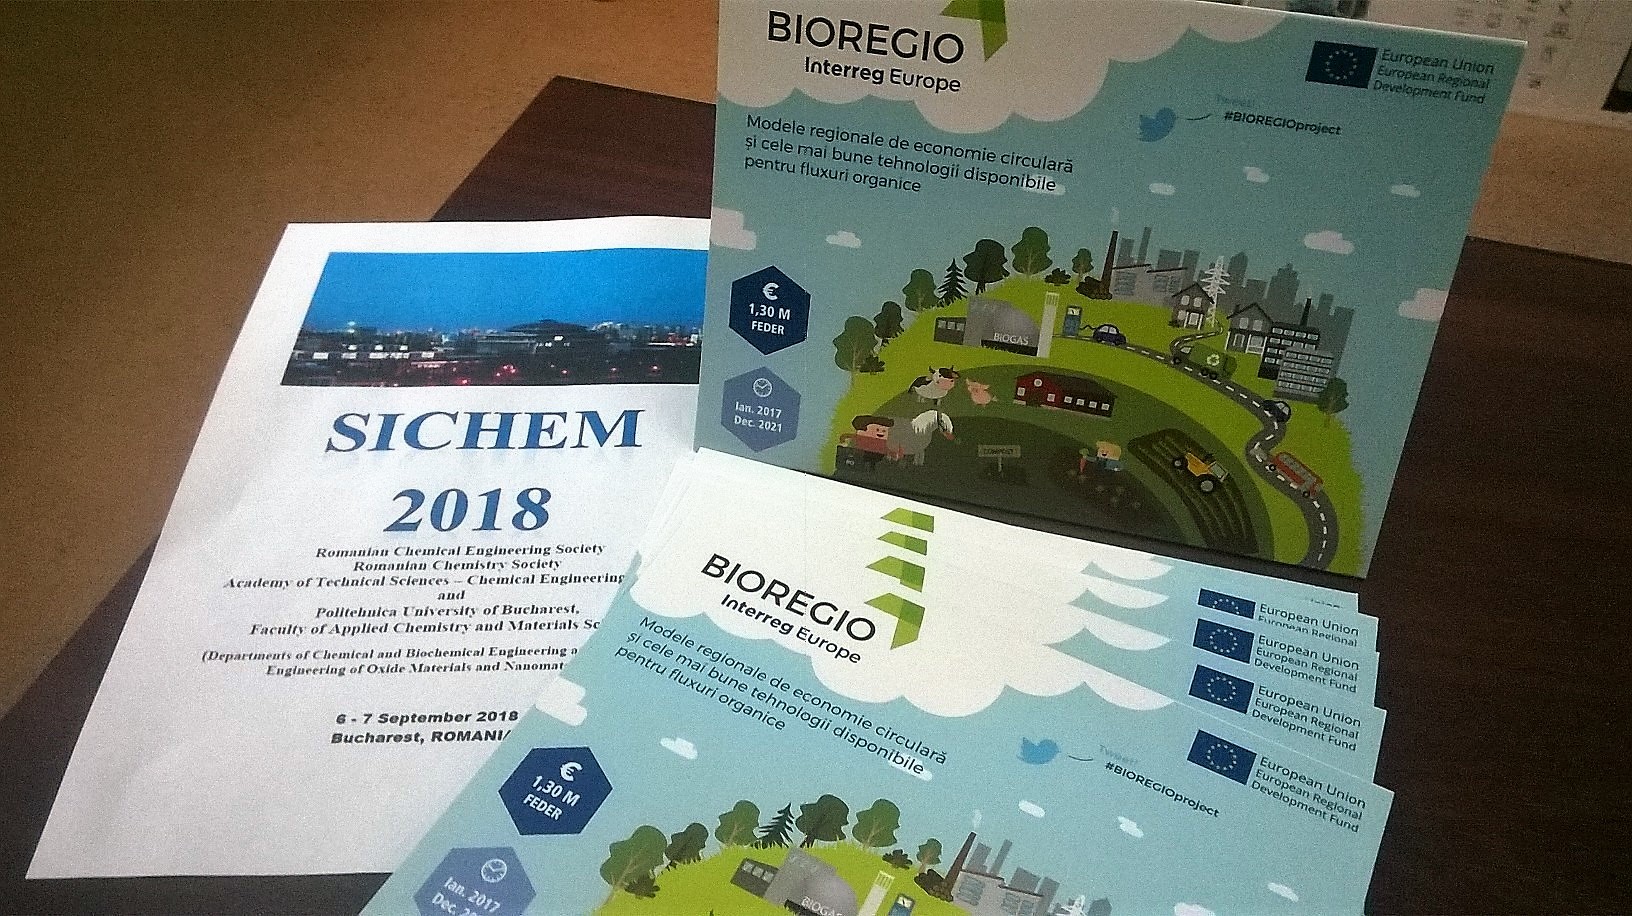 BIOREGIO at SICHEM 2018 Symposium 